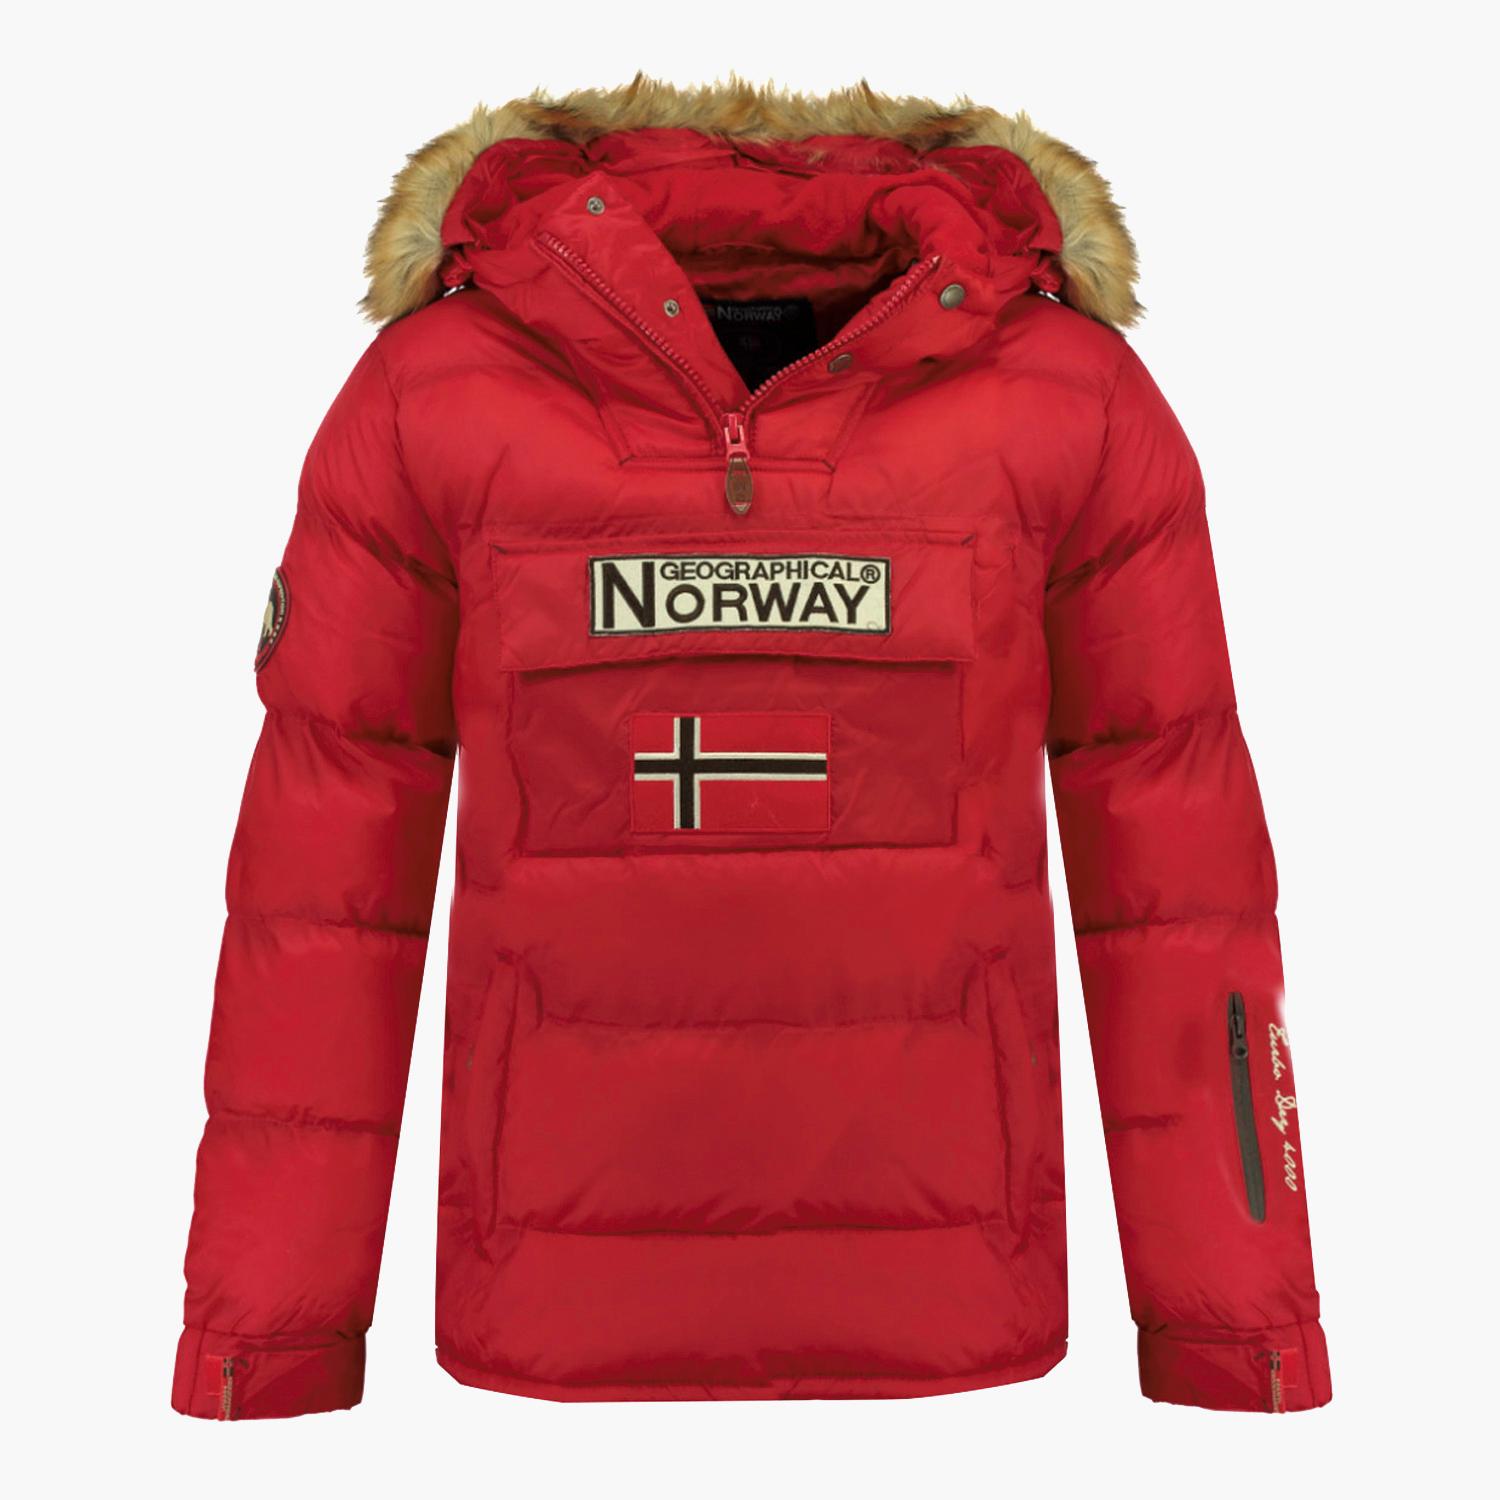 Solo haz financiero Th Geographical Norway Boker - Rojo - Anorak Hombre | Sprinter